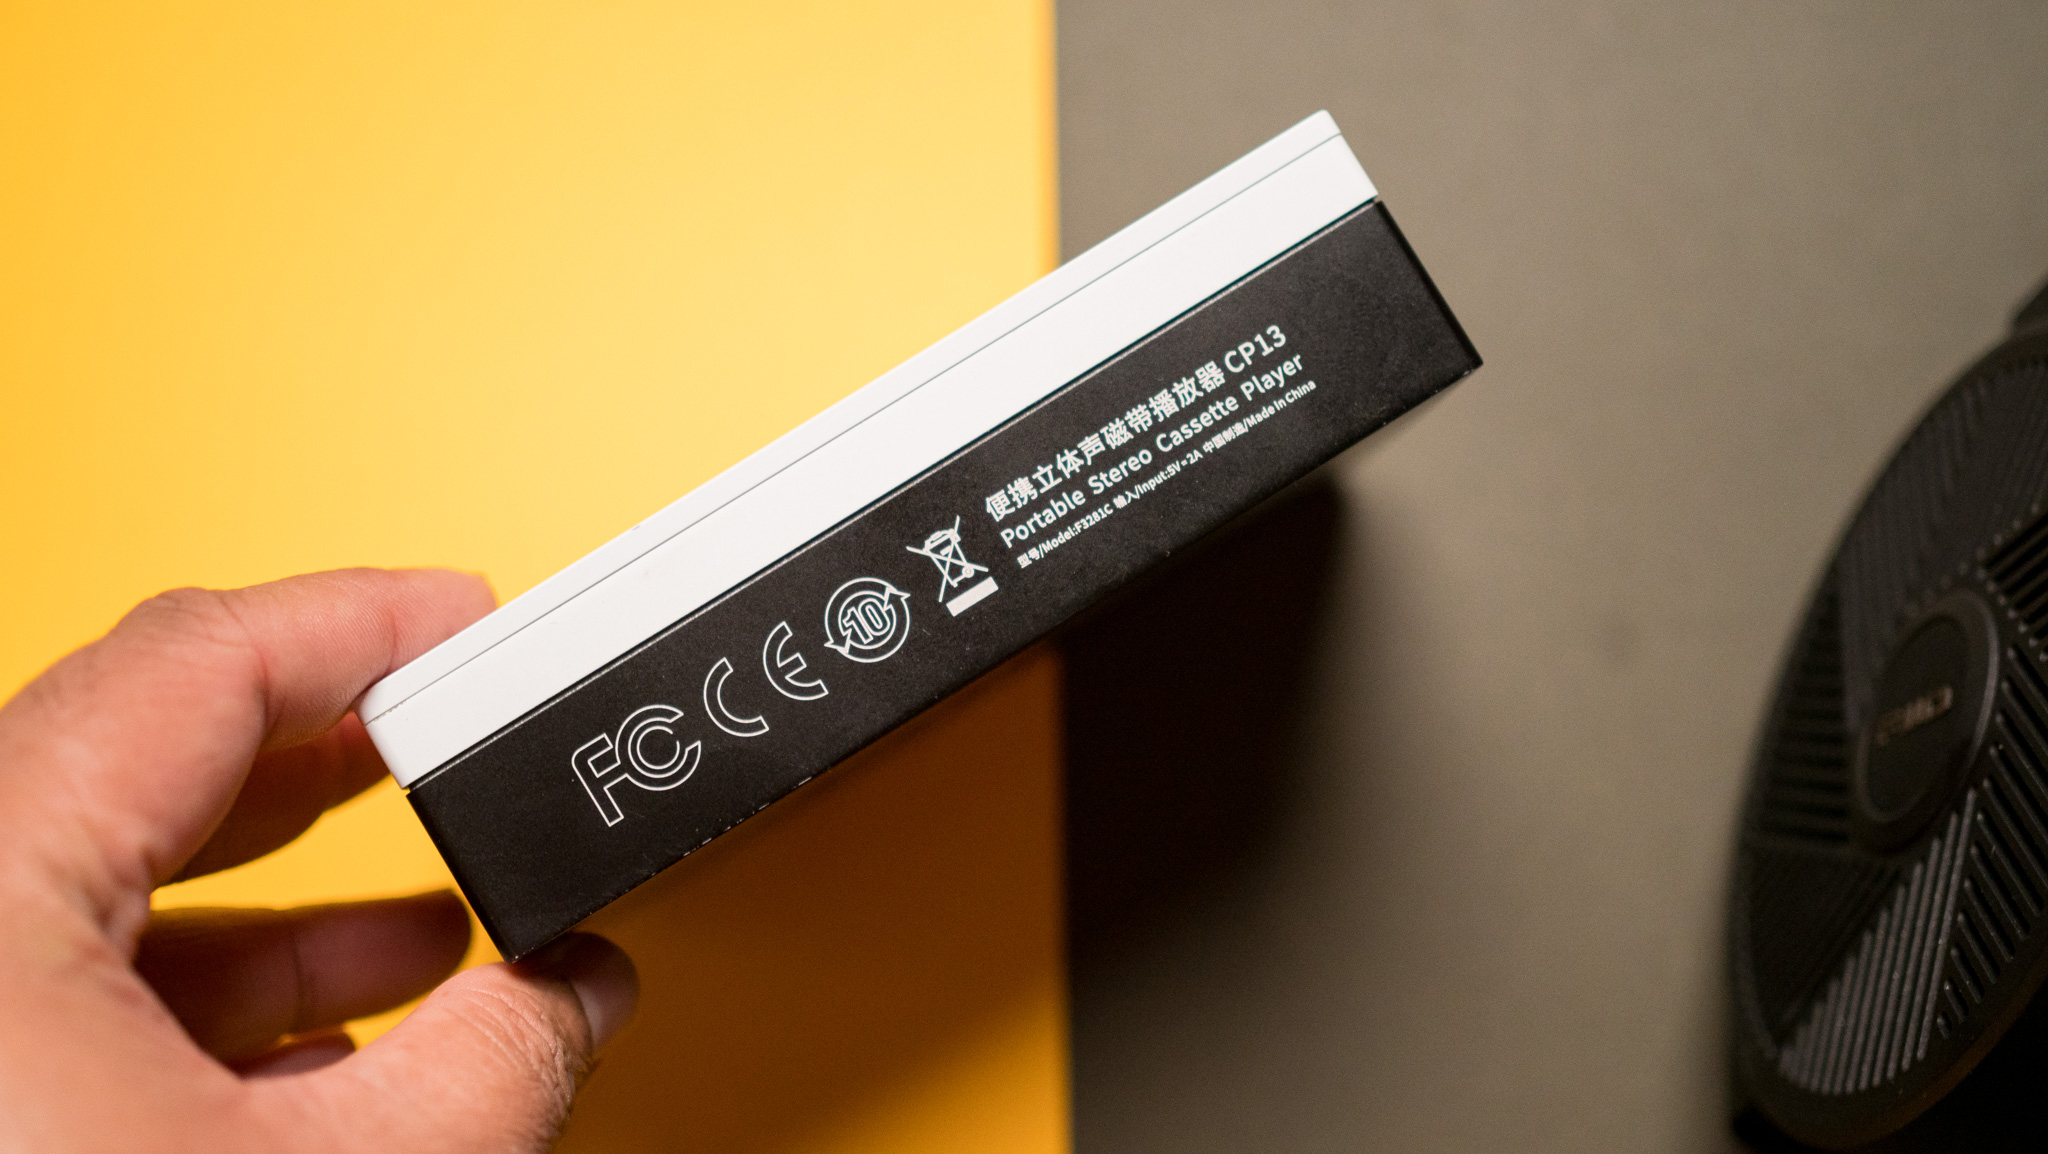 Fiio CP13 卡带播放器的标签